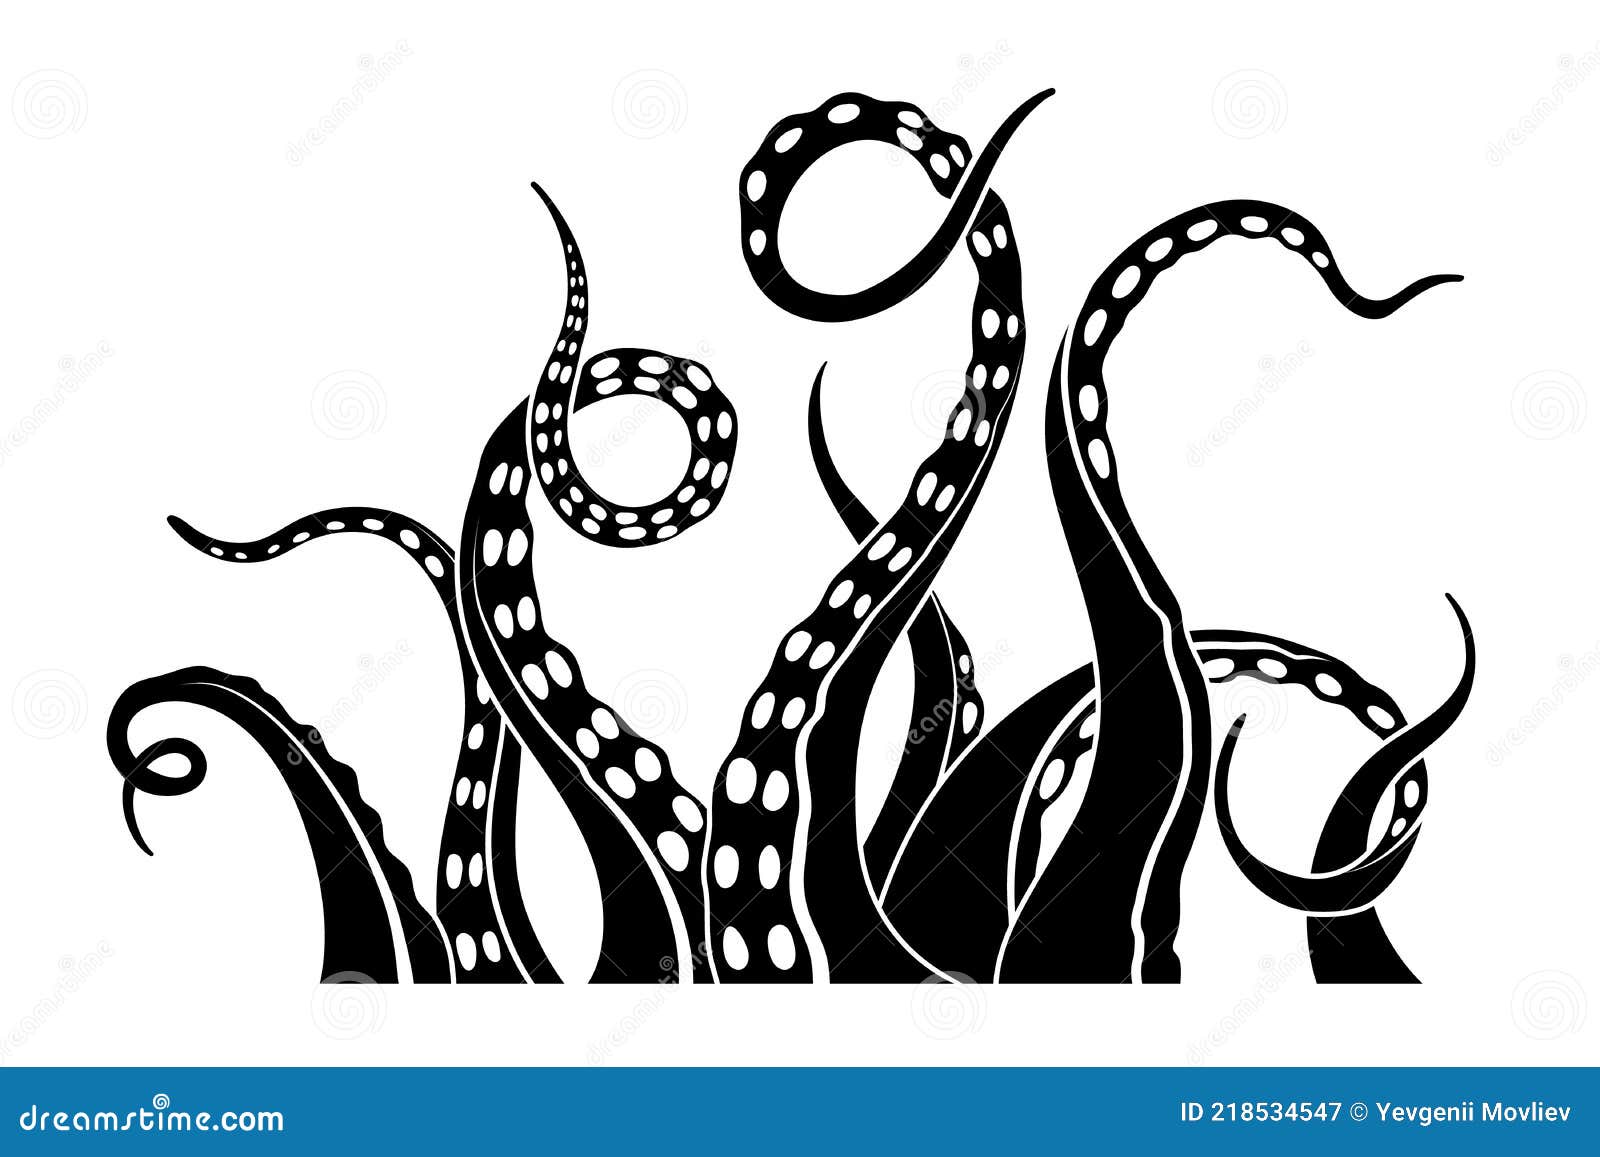 black silhouette of octopus tentacles.  sea monster drawing. kraken sketch. underwater animal wall art